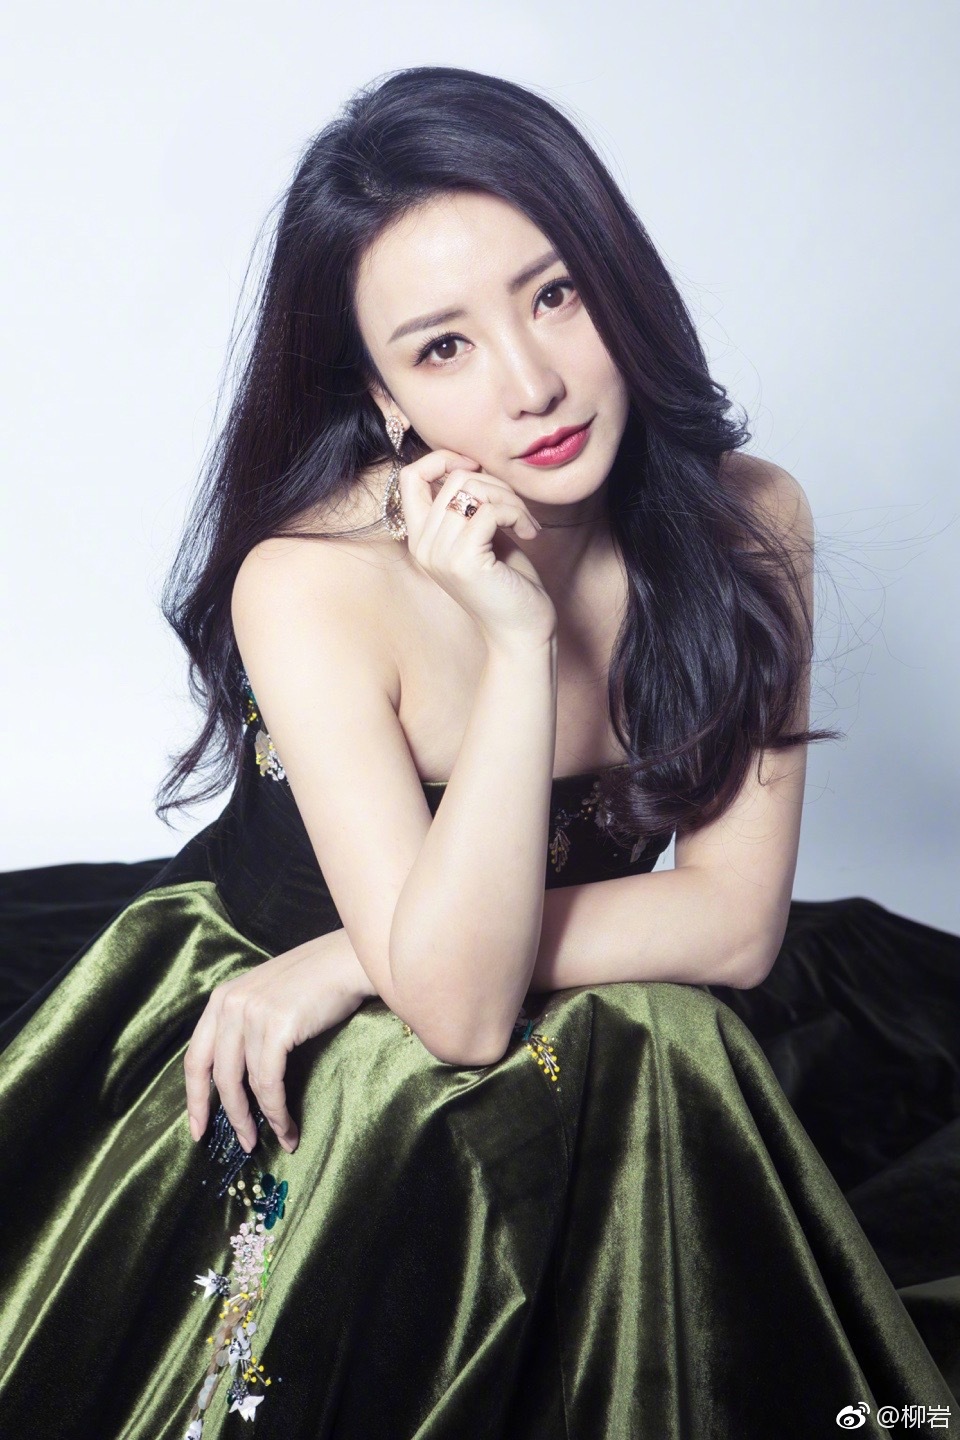 Liuyan Chinese Green Dress Looking At Viewer Black Hair Red Lipstick Women Model Brunette Studio 960x1440